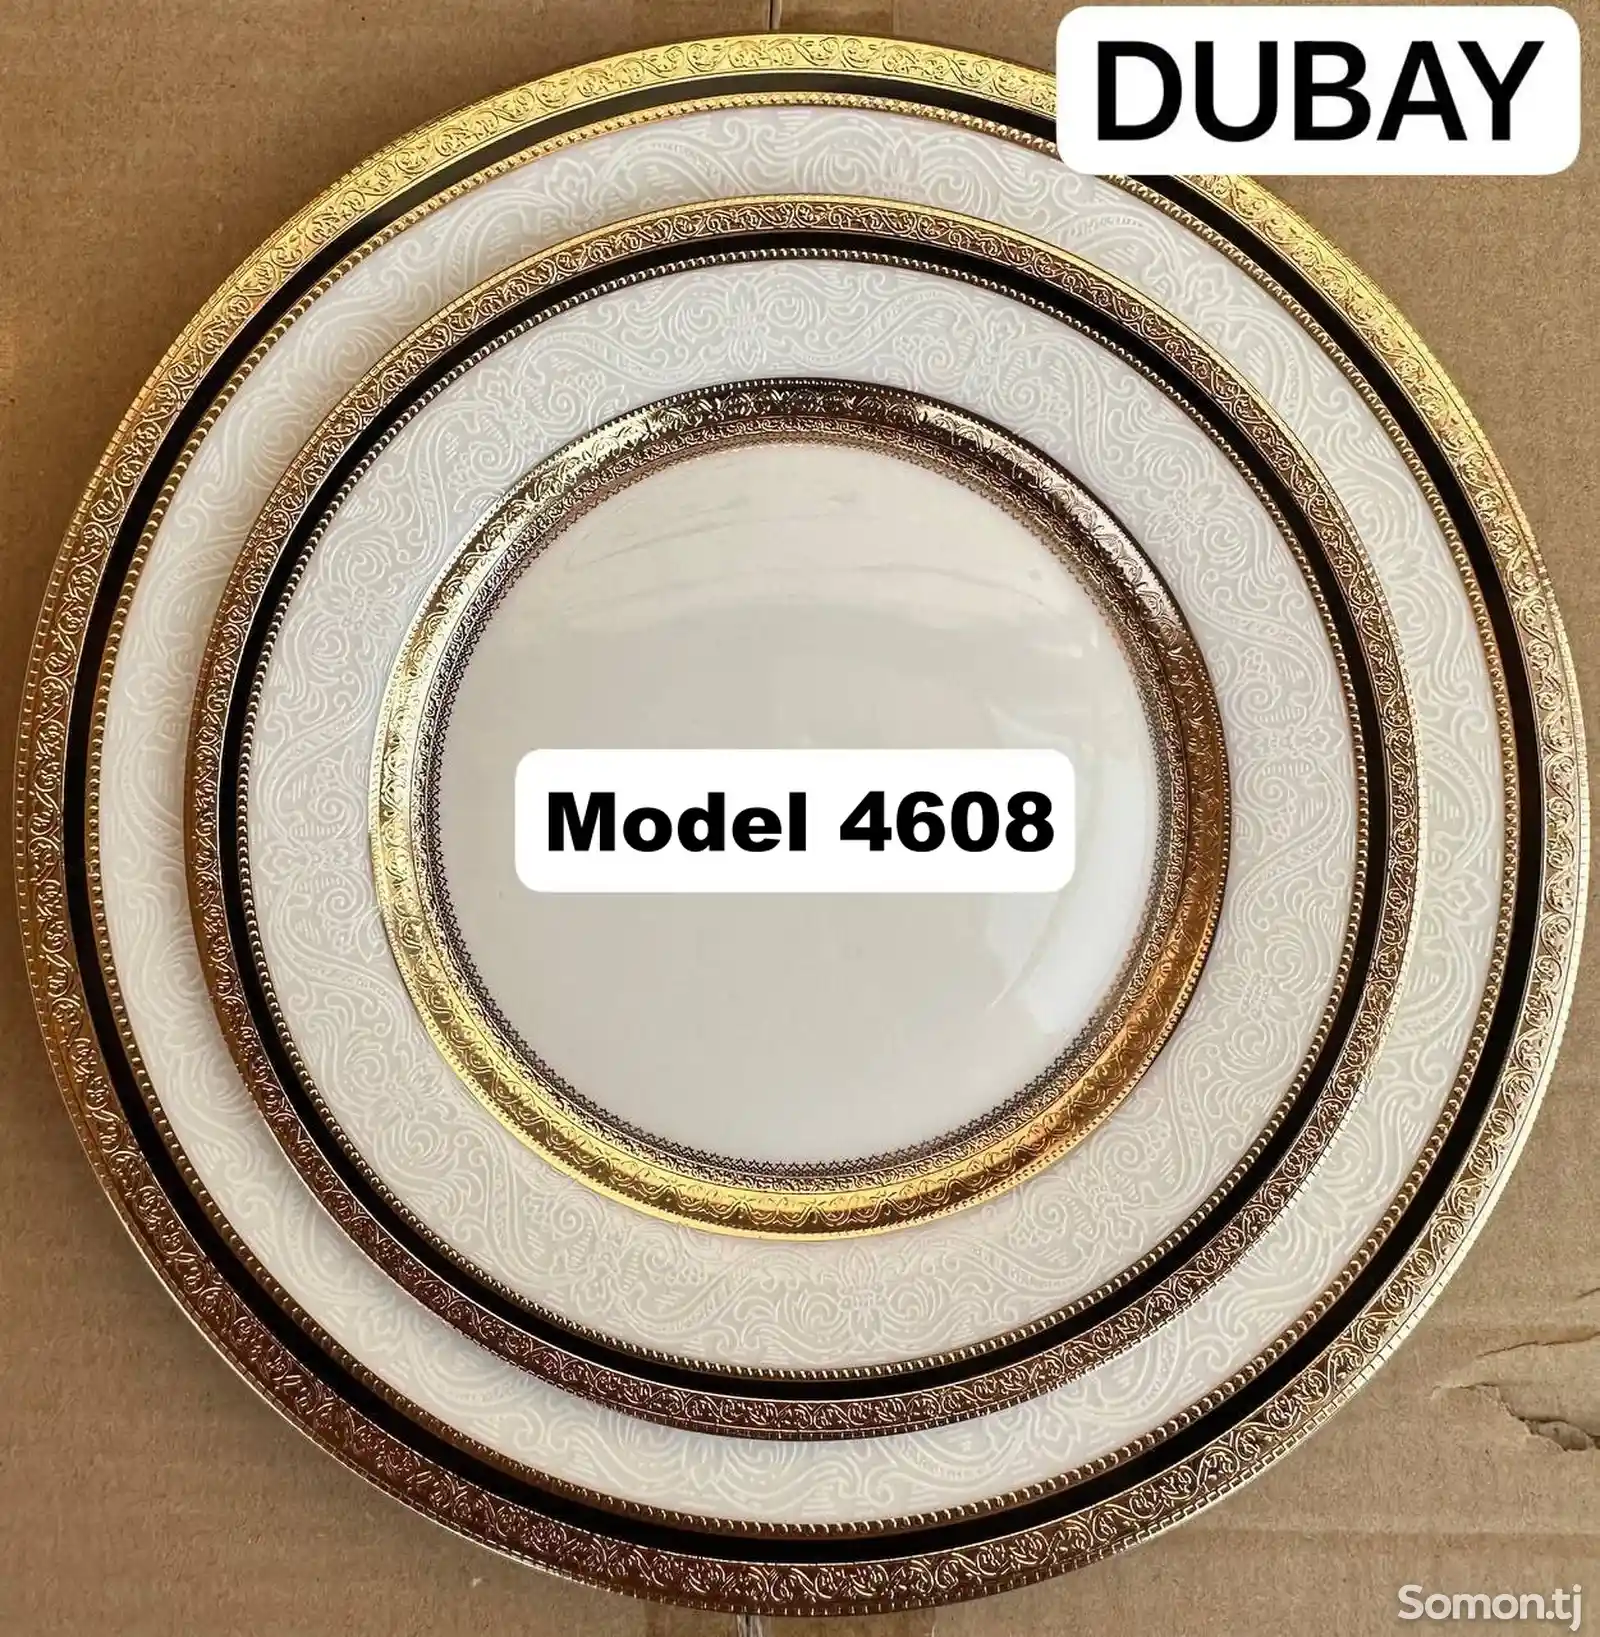 Набор посуды Dubay-4608 комплект 6-7